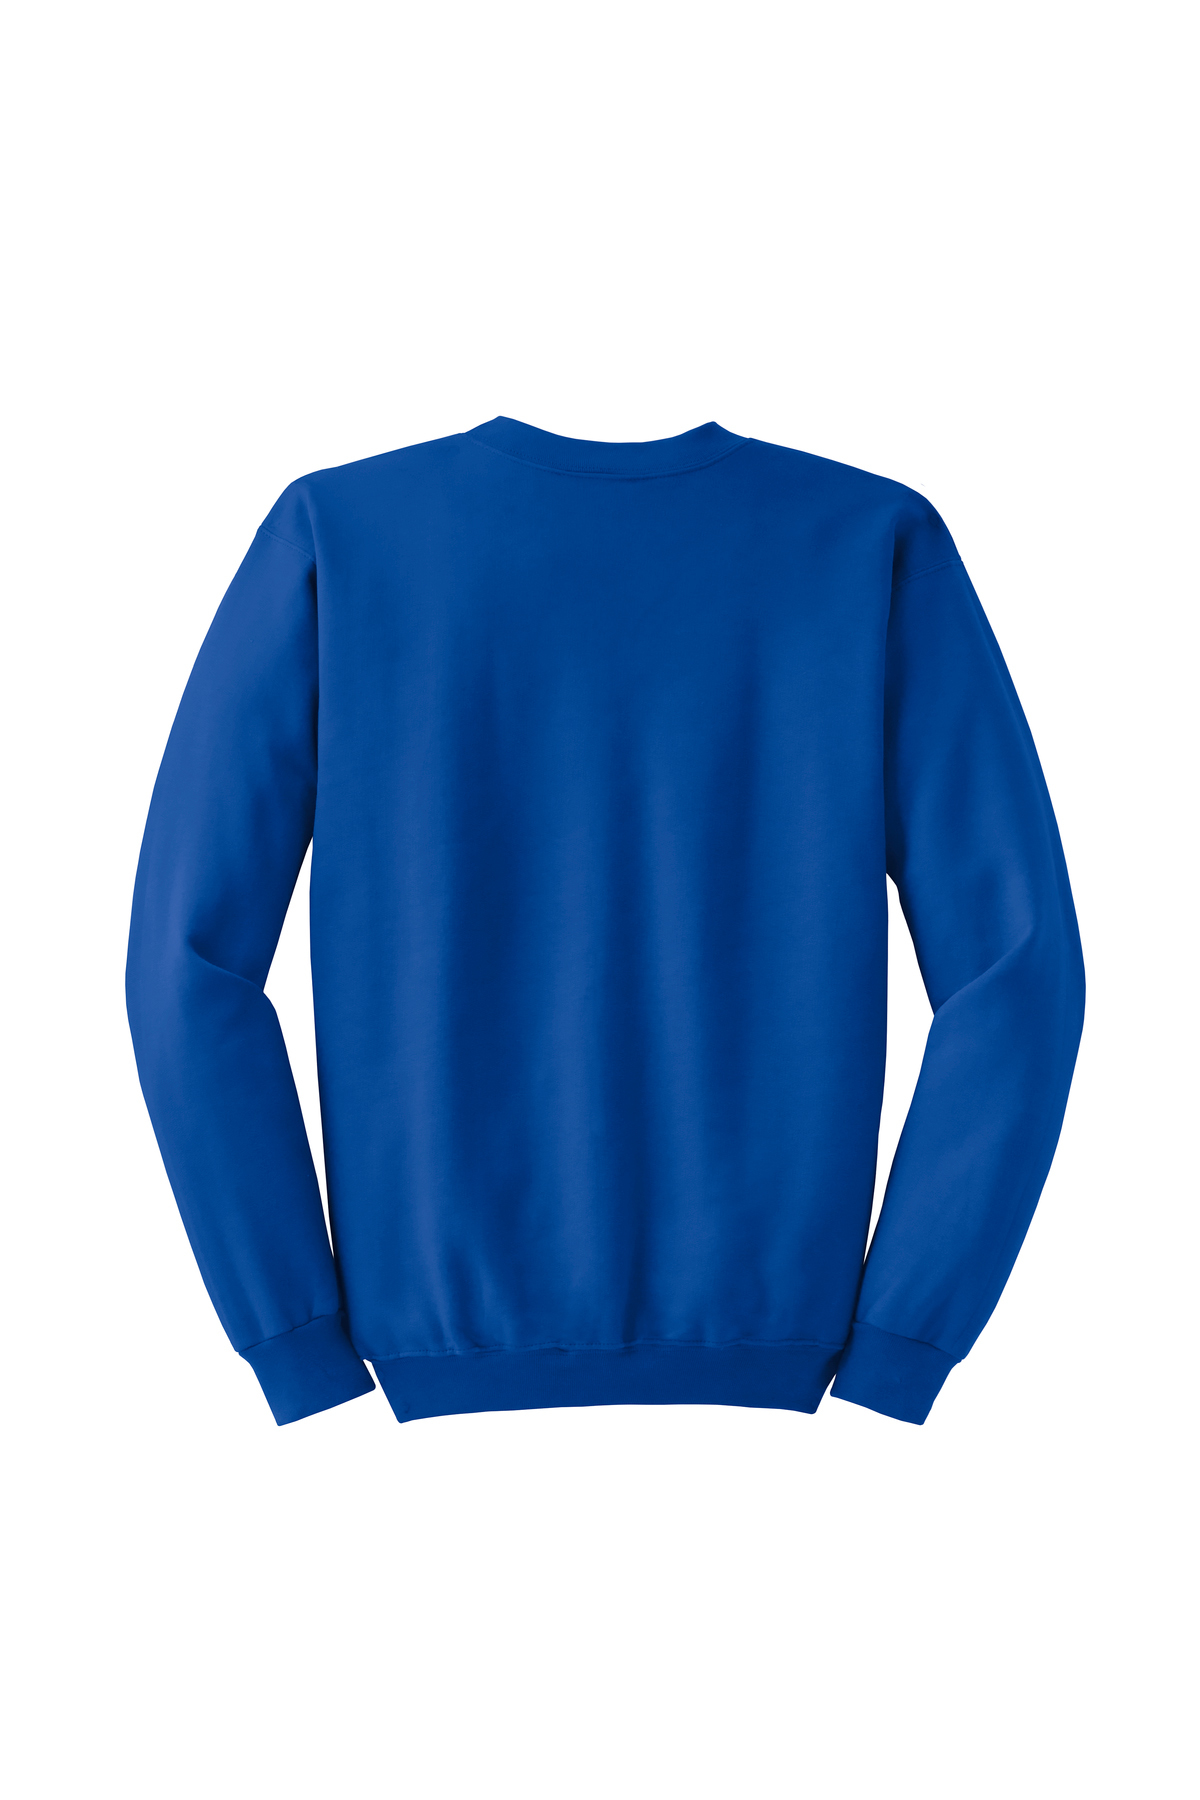 Hanes Ultimate Cotton - Crewneck Sweatshirt | Product | Online Apparel ...